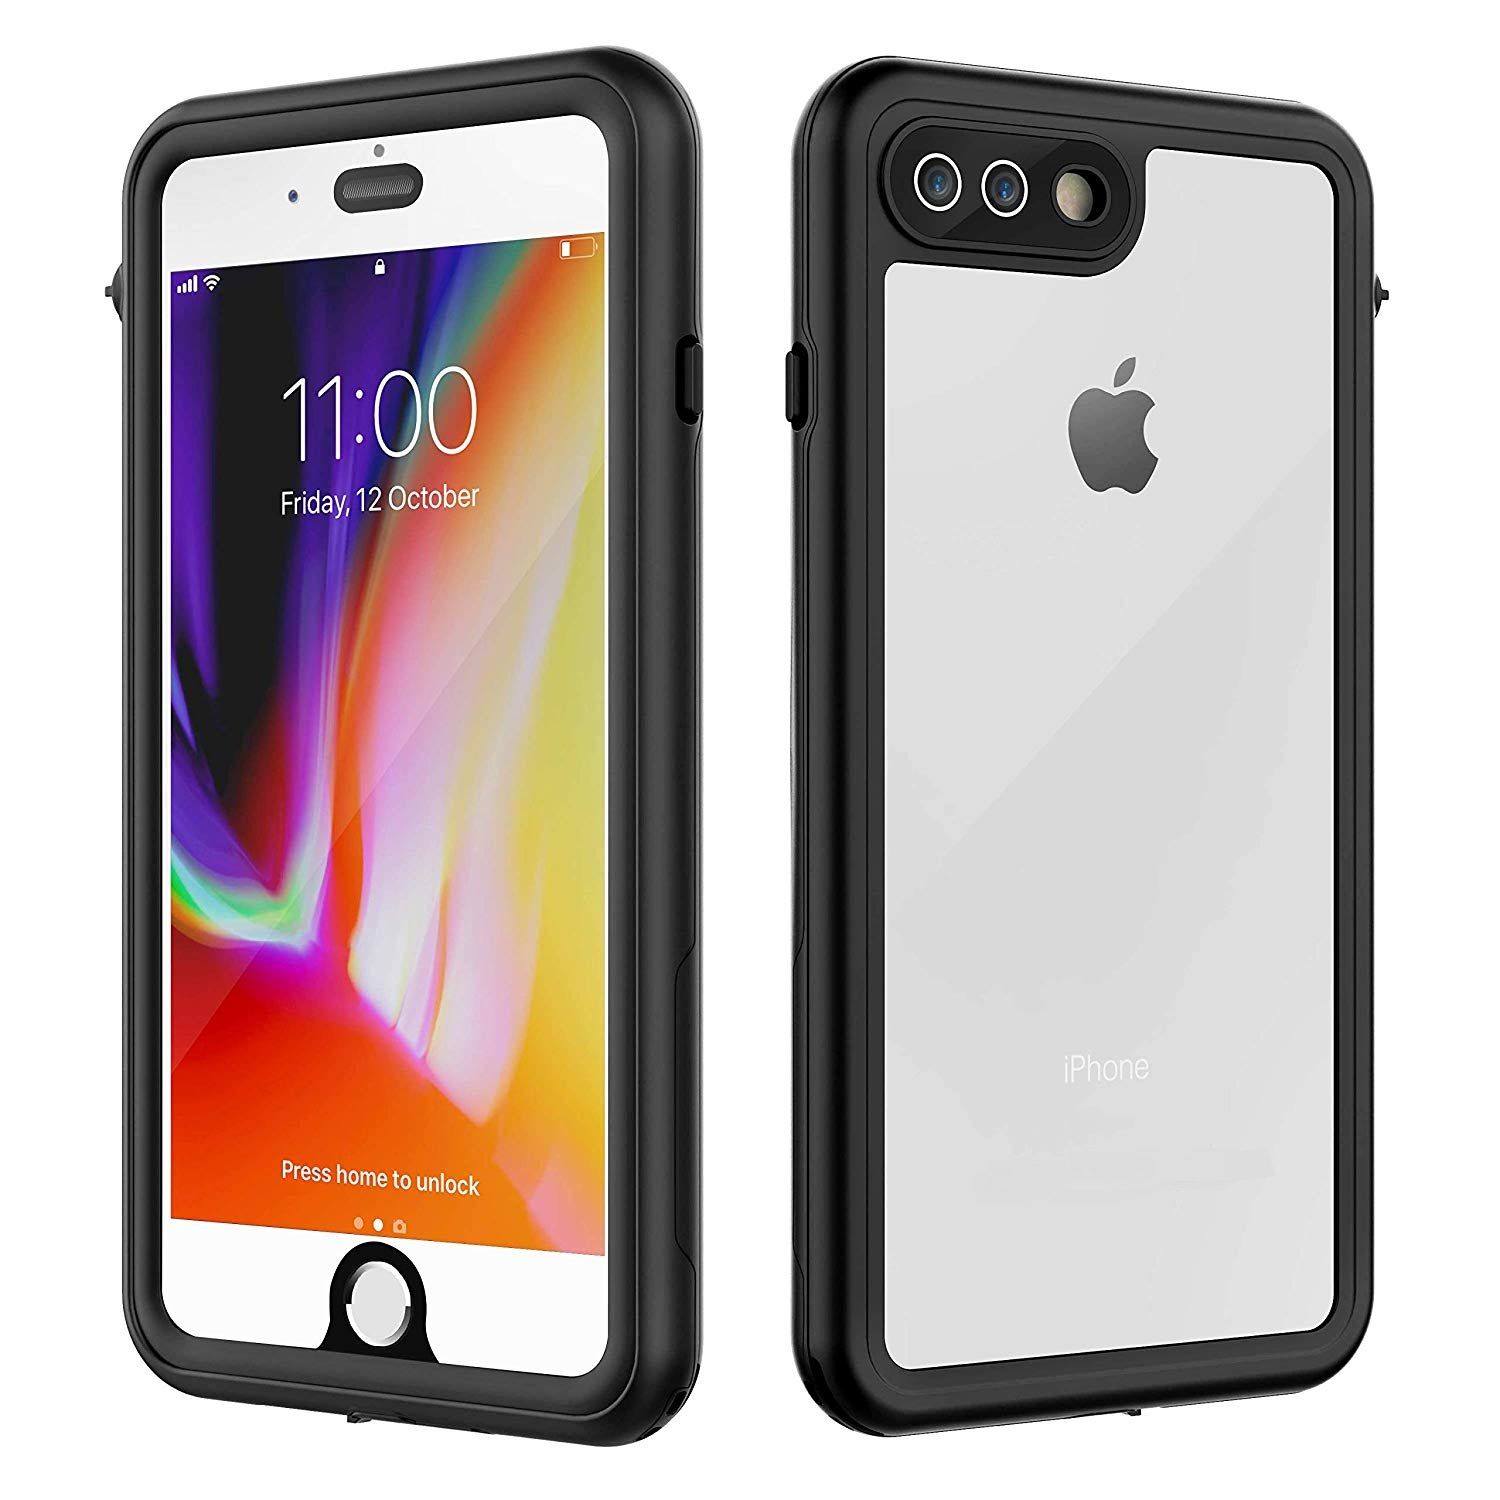 Nuevo iPhone 7 caso cubierta resistente funda a prueba de impactos nuevos con protector de pantalla nos 